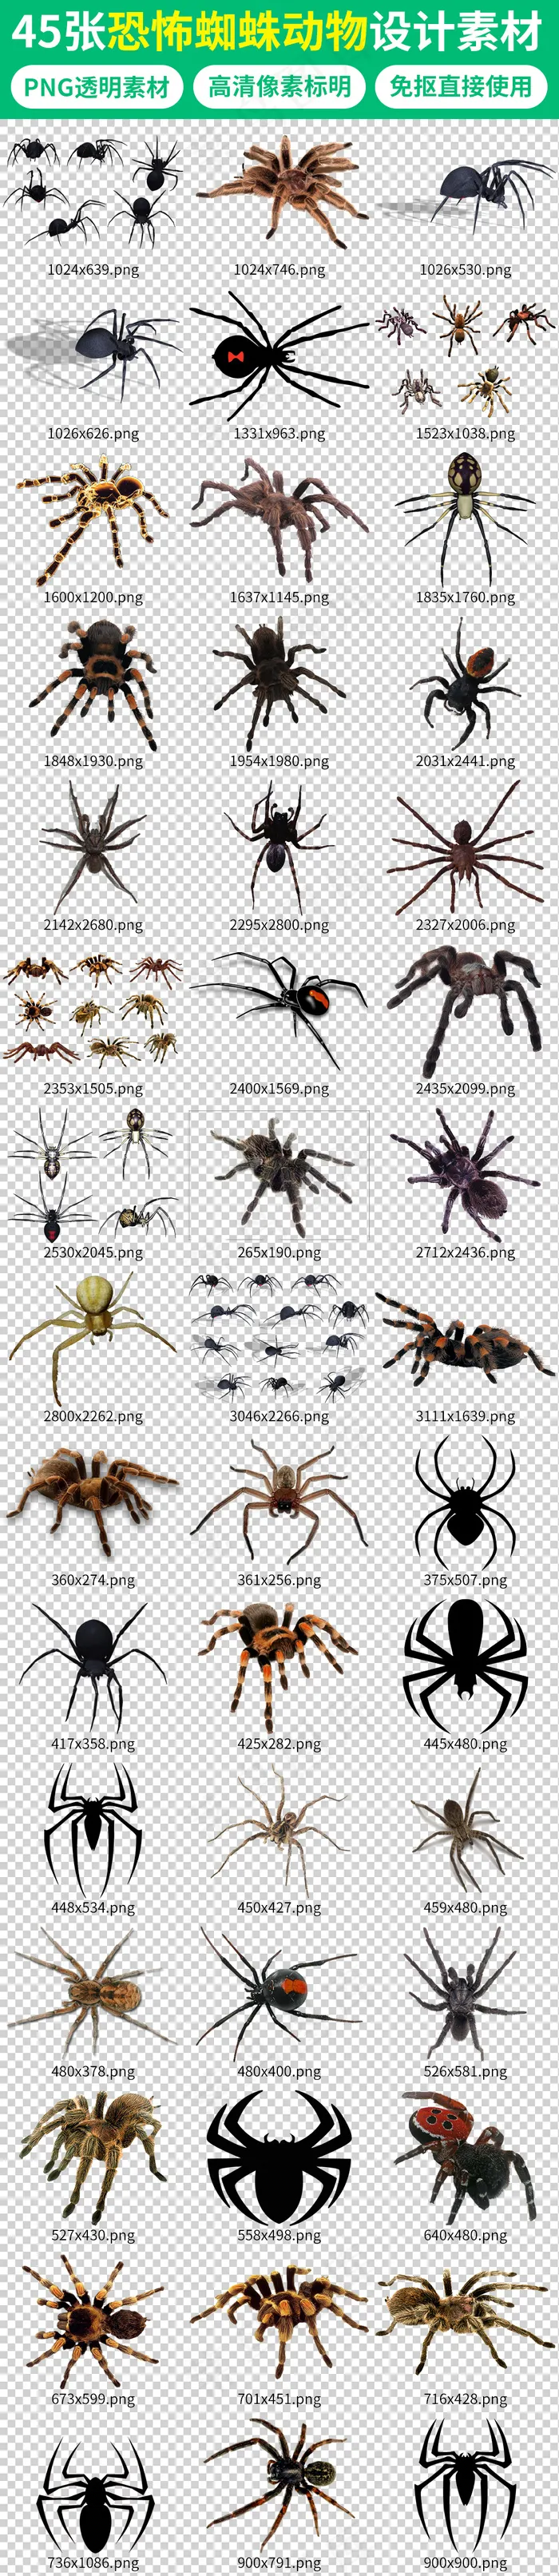 黑色恐怖剧毒蜘蛛动物海报素材